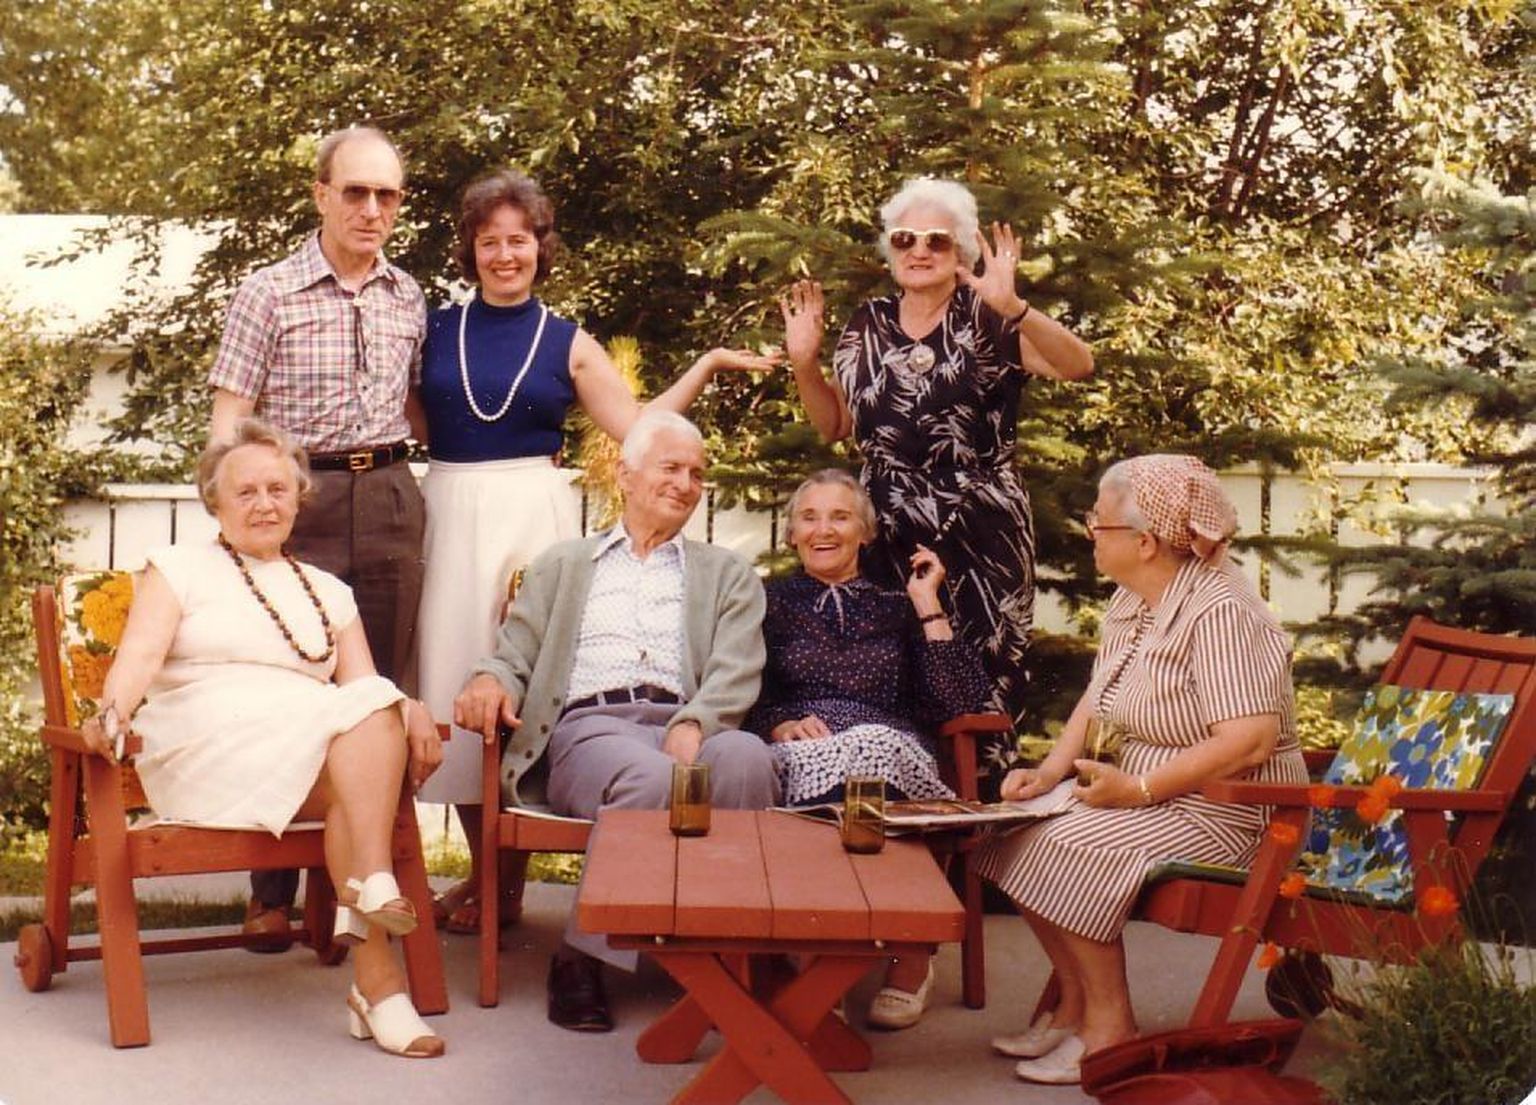 Gerda ja Nikolai Rõuk (pildil vasakul, istumas) olid aktiivsed eestluse edendajad ka võõrsil. Nende tütar Kadri Rõuk (vasakult teine, seismas) annetas vanemate auks suure summa eesti keele hoidmisse ja arengusse.